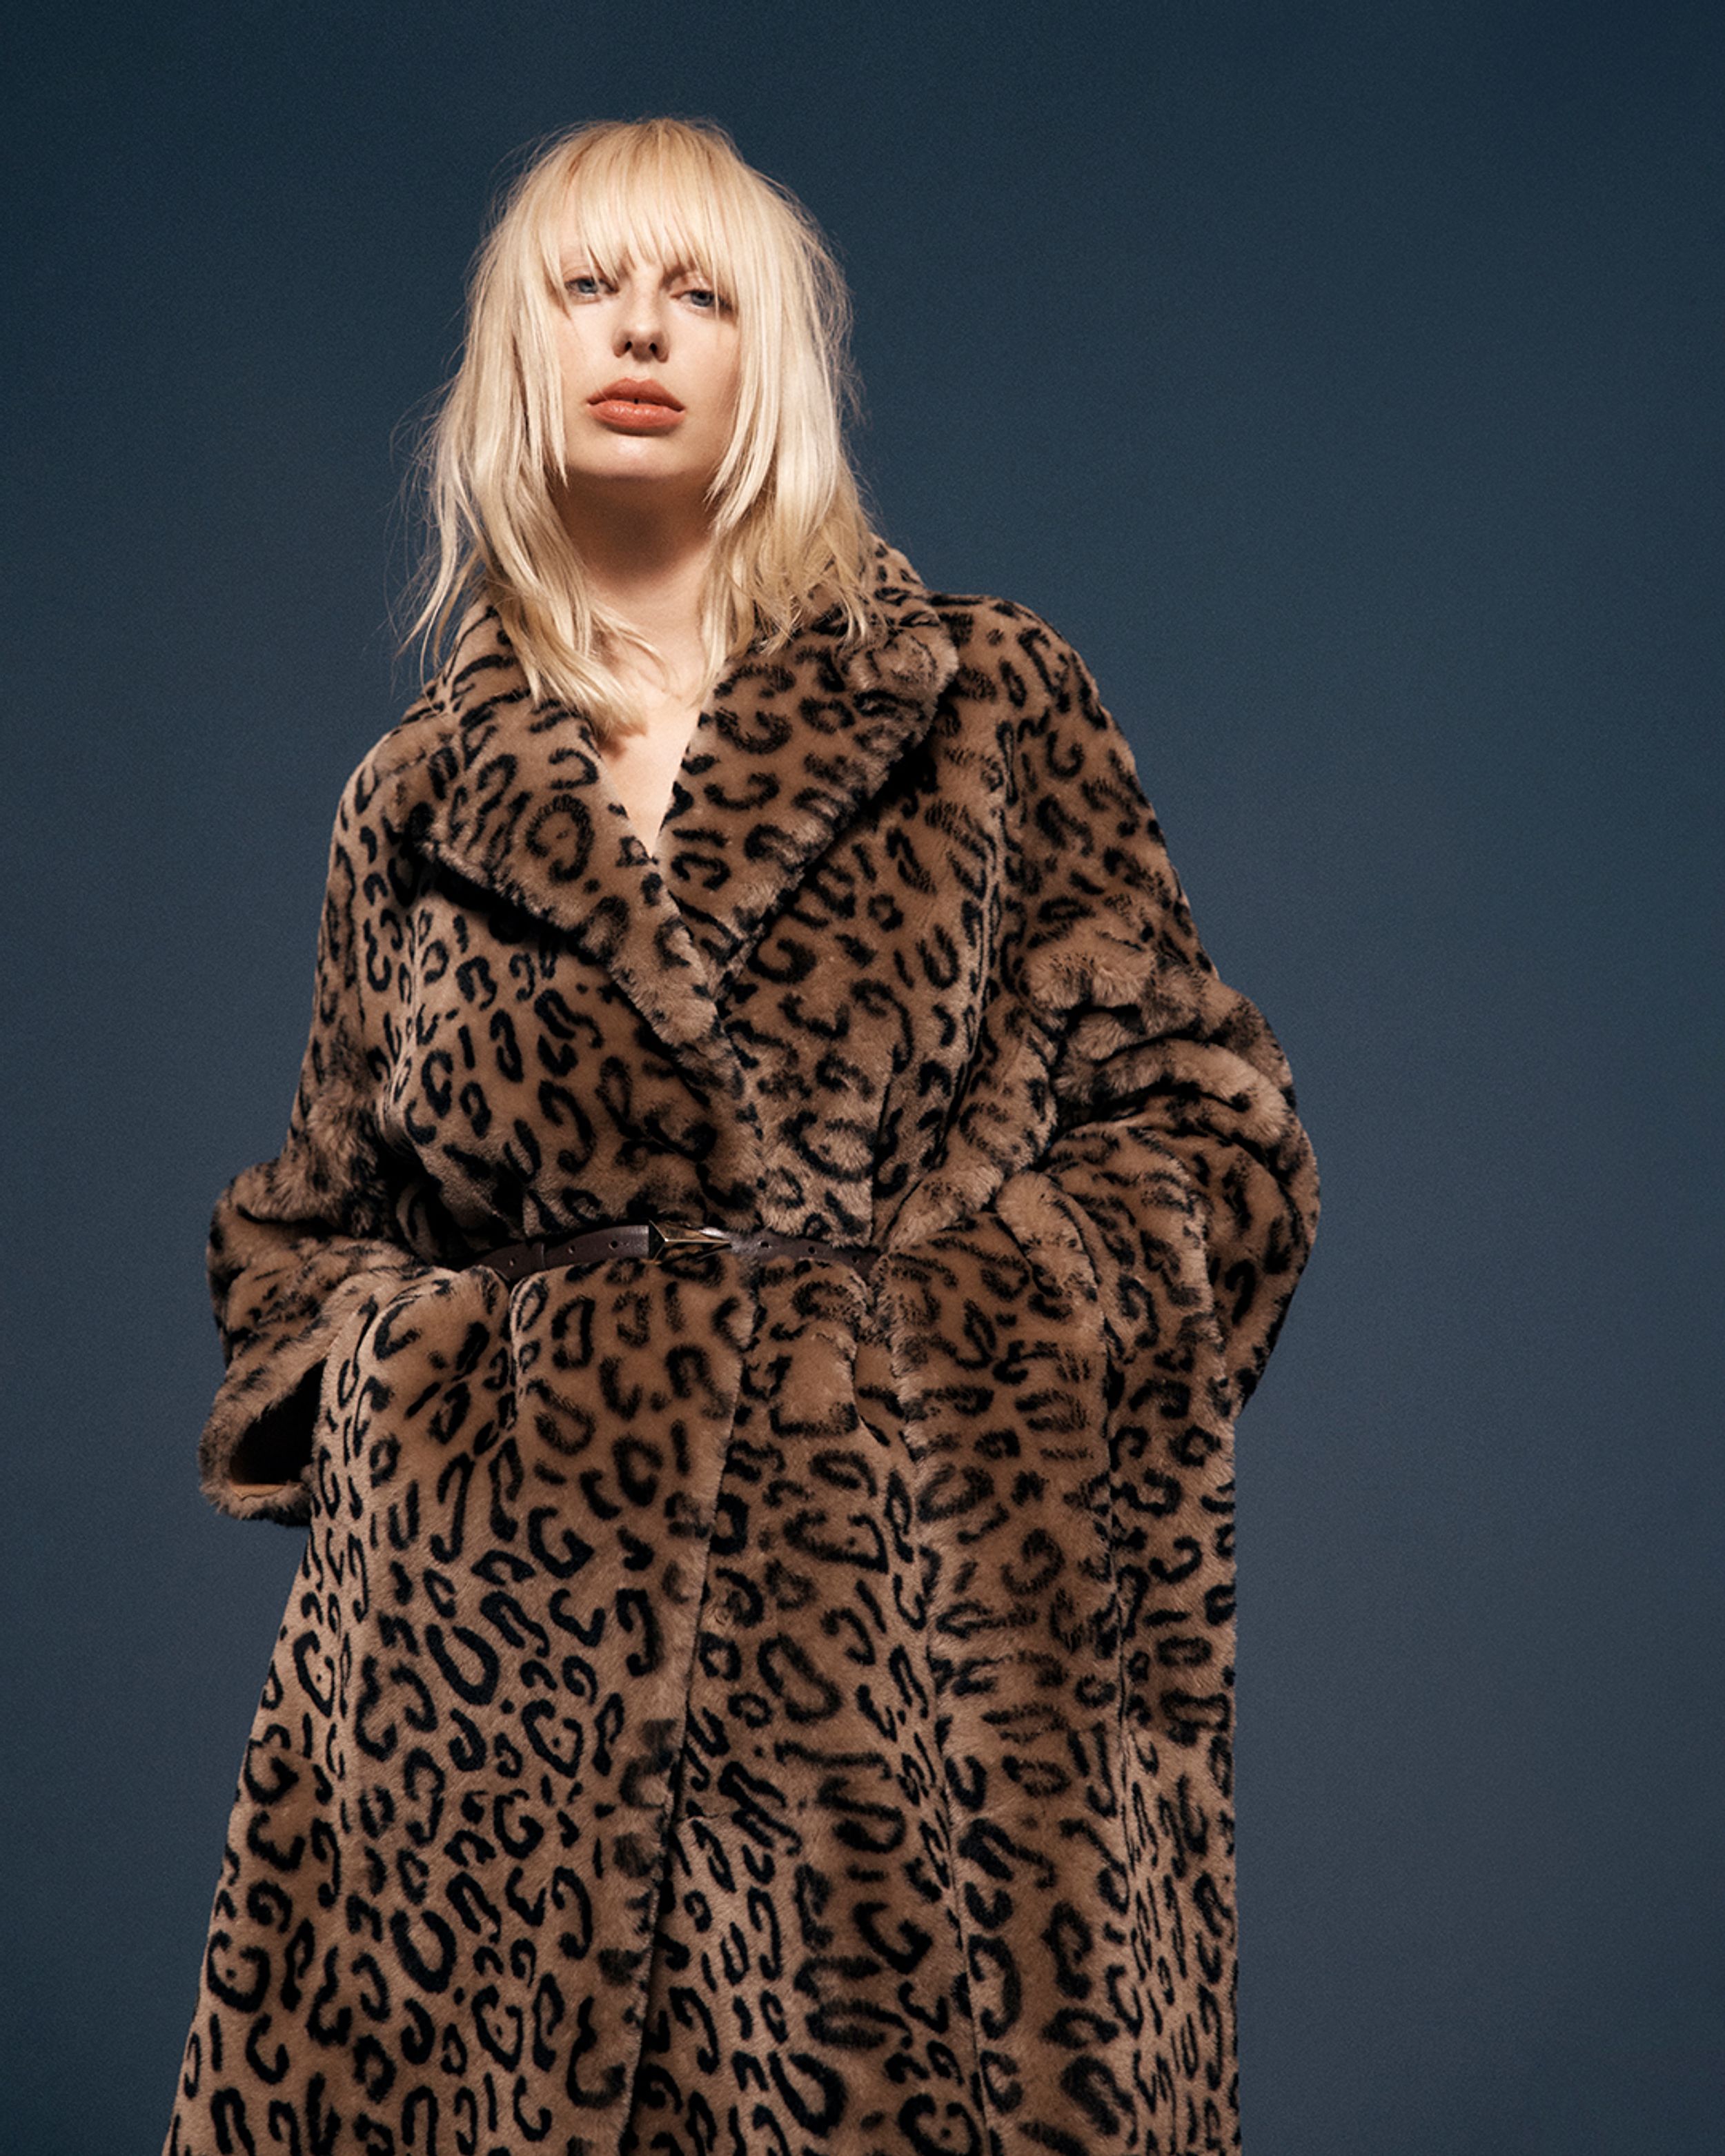 Blonde model wearing a leopard-print coat